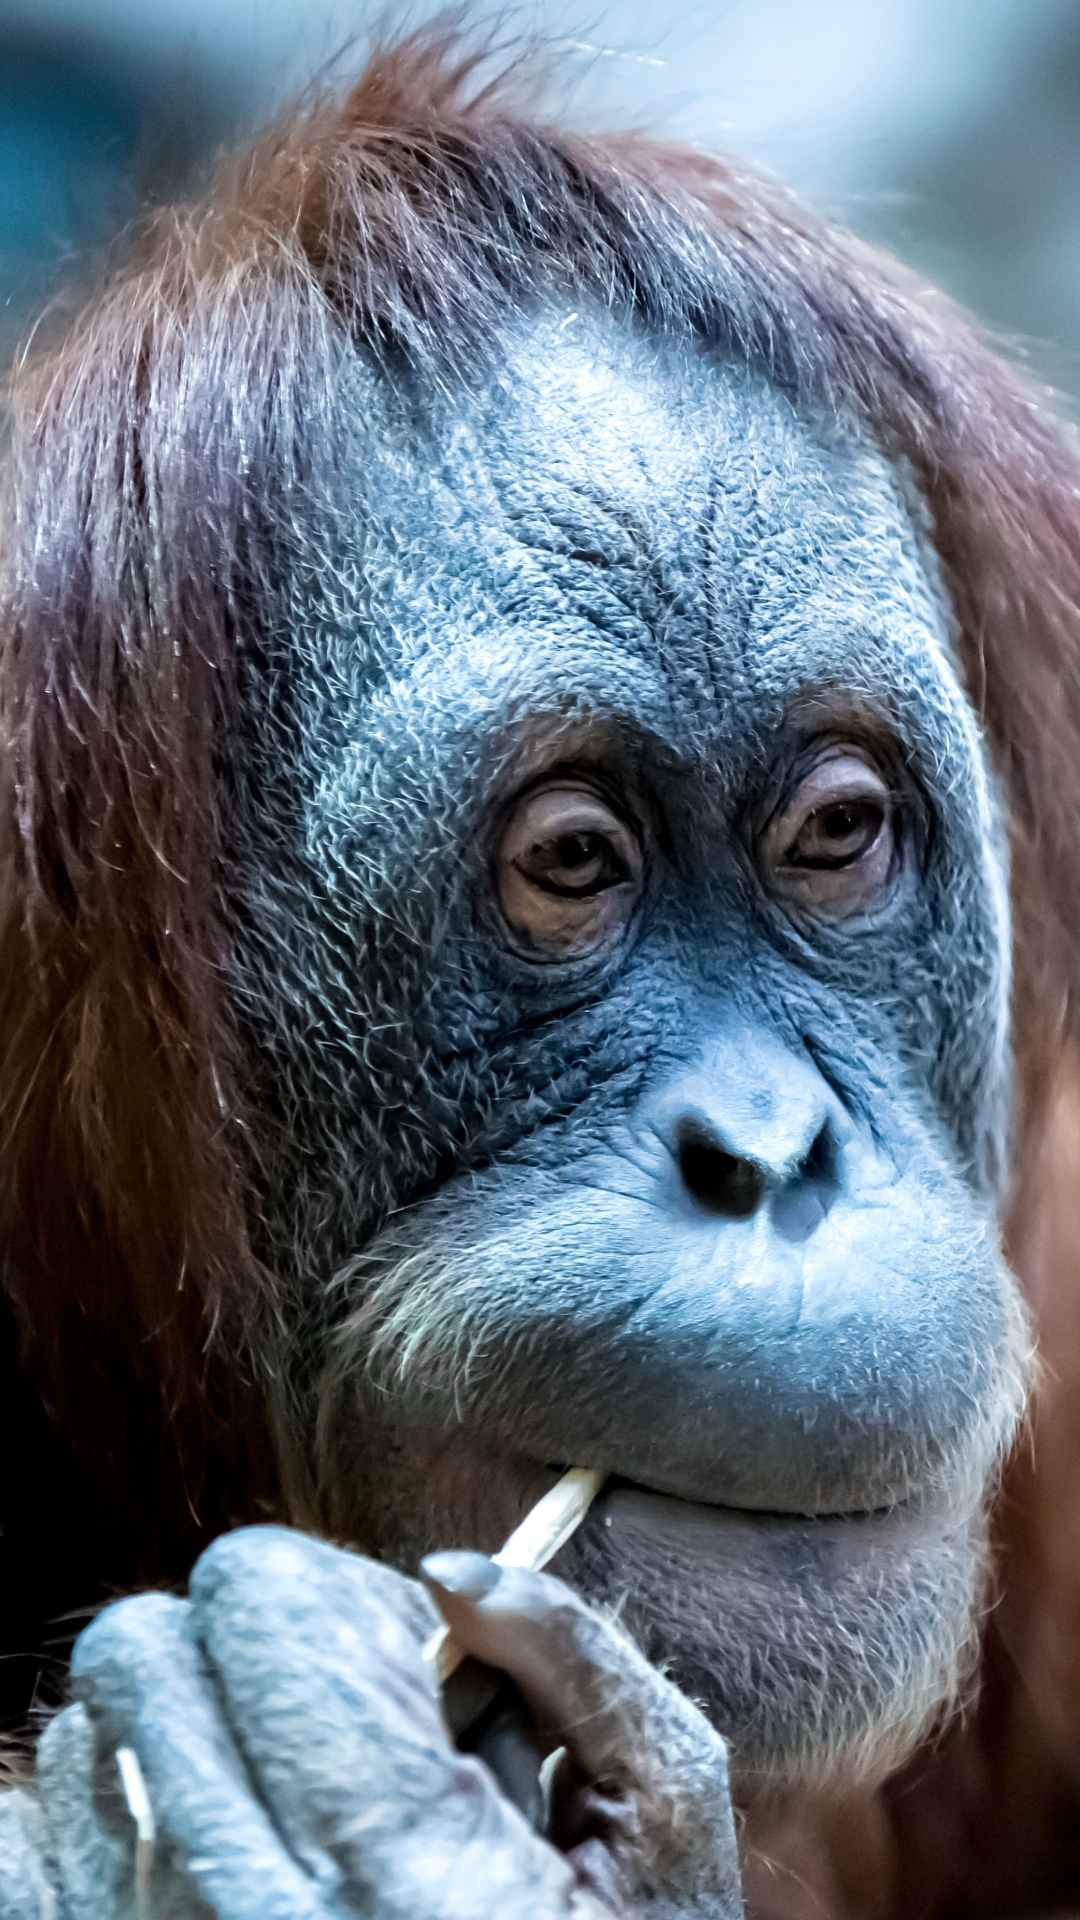 Descarga gratuita de fondo de pantalla para móvil de Animales, Monos, Mono, Primate, Pongo.